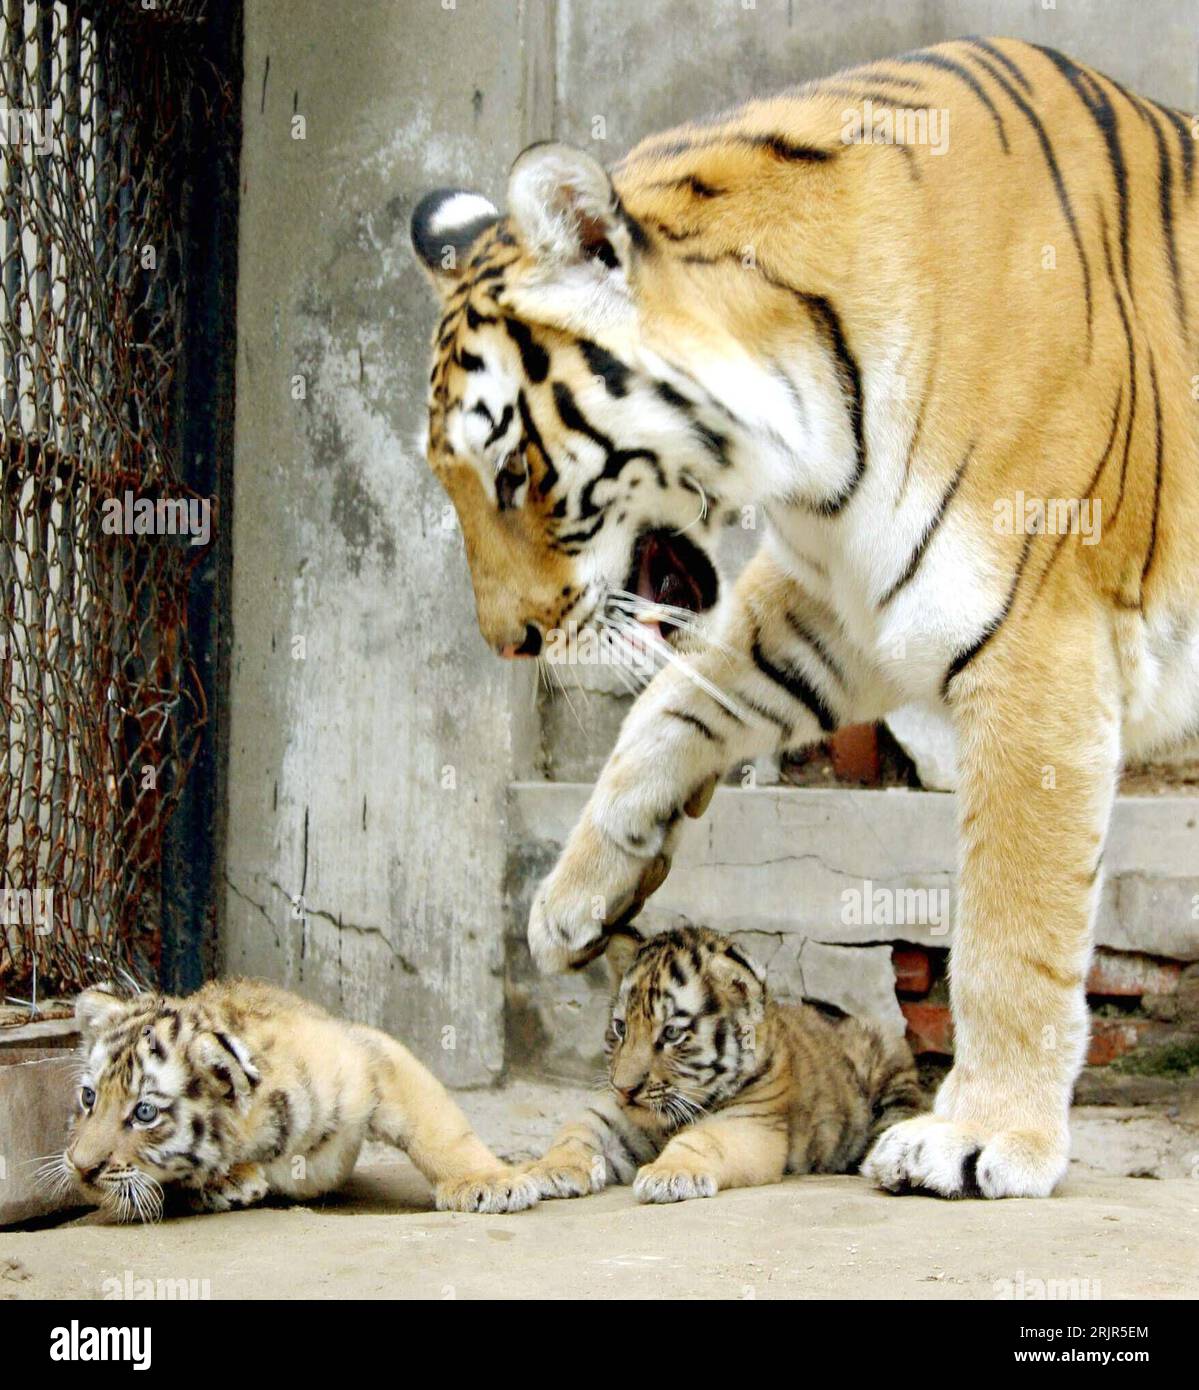 Bildnummer: 51298883 Datum: 21.06.2006 Copyright: imago/Xinhua Sibirischer Tiger (Panthera tigris altaica) spielt mit seinen Neugeborenen im Zoo von Jinan - Cina - PUBLICATIONxNOTxINxCHN, Tiere; 2006, Jinan, zoo, Tiergarten, Tiergärten, Zoologischer Garten, Gehege, Jungtier, Jungtiere, Raubkatze, Raubkatzen, spielend, spielen, Sibirische, sibirisch, Säugetiere; , hoch, Kbdig, Gruppenbild, Cina, , Foto Stock